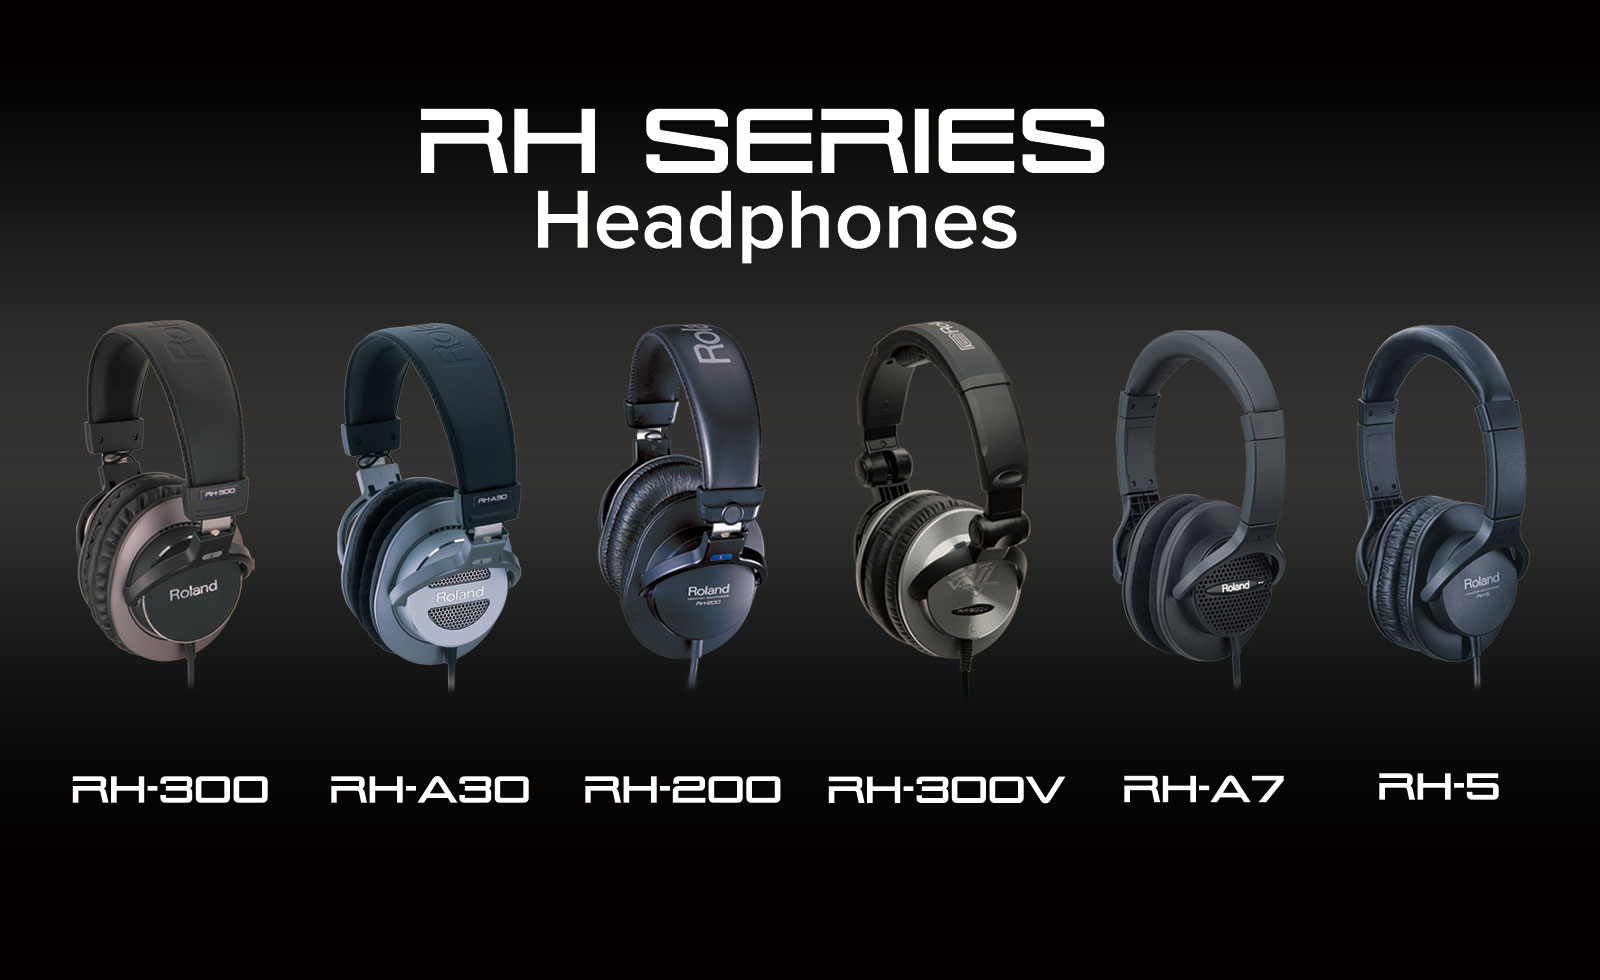 Tai nghe/ Monitor Headphones - Roland RH-5 (RH5) - Màu đen - Hàng chính hãng